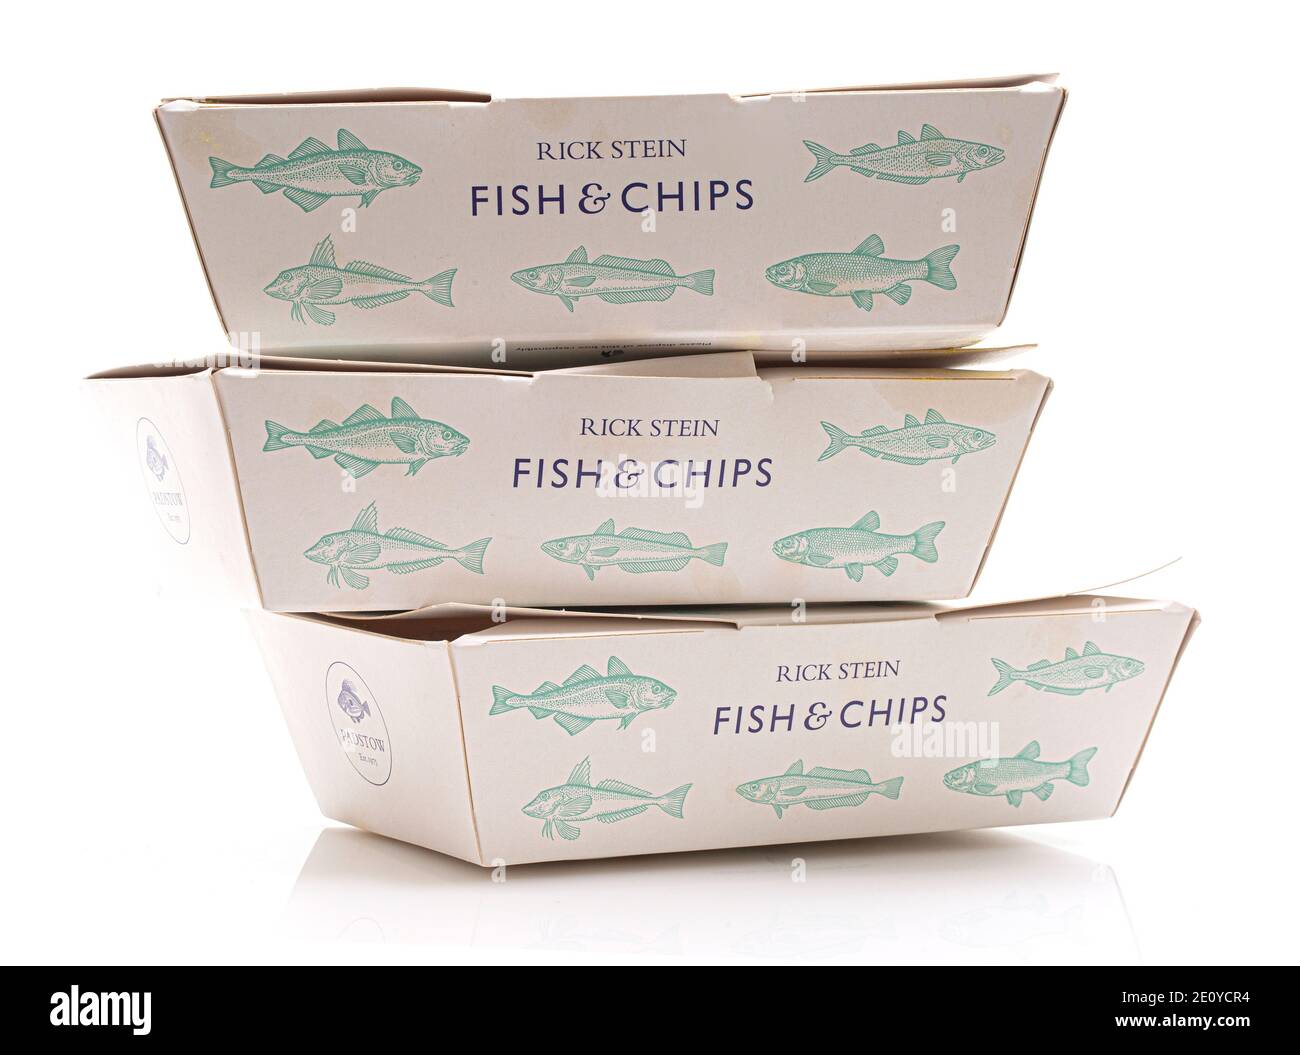 SWINDON, Royaume-Uni - 2 JANVIER 2021 : 3 boîtes à emporter Fish & Chip du restaurant Rick Steins Banque D'Images